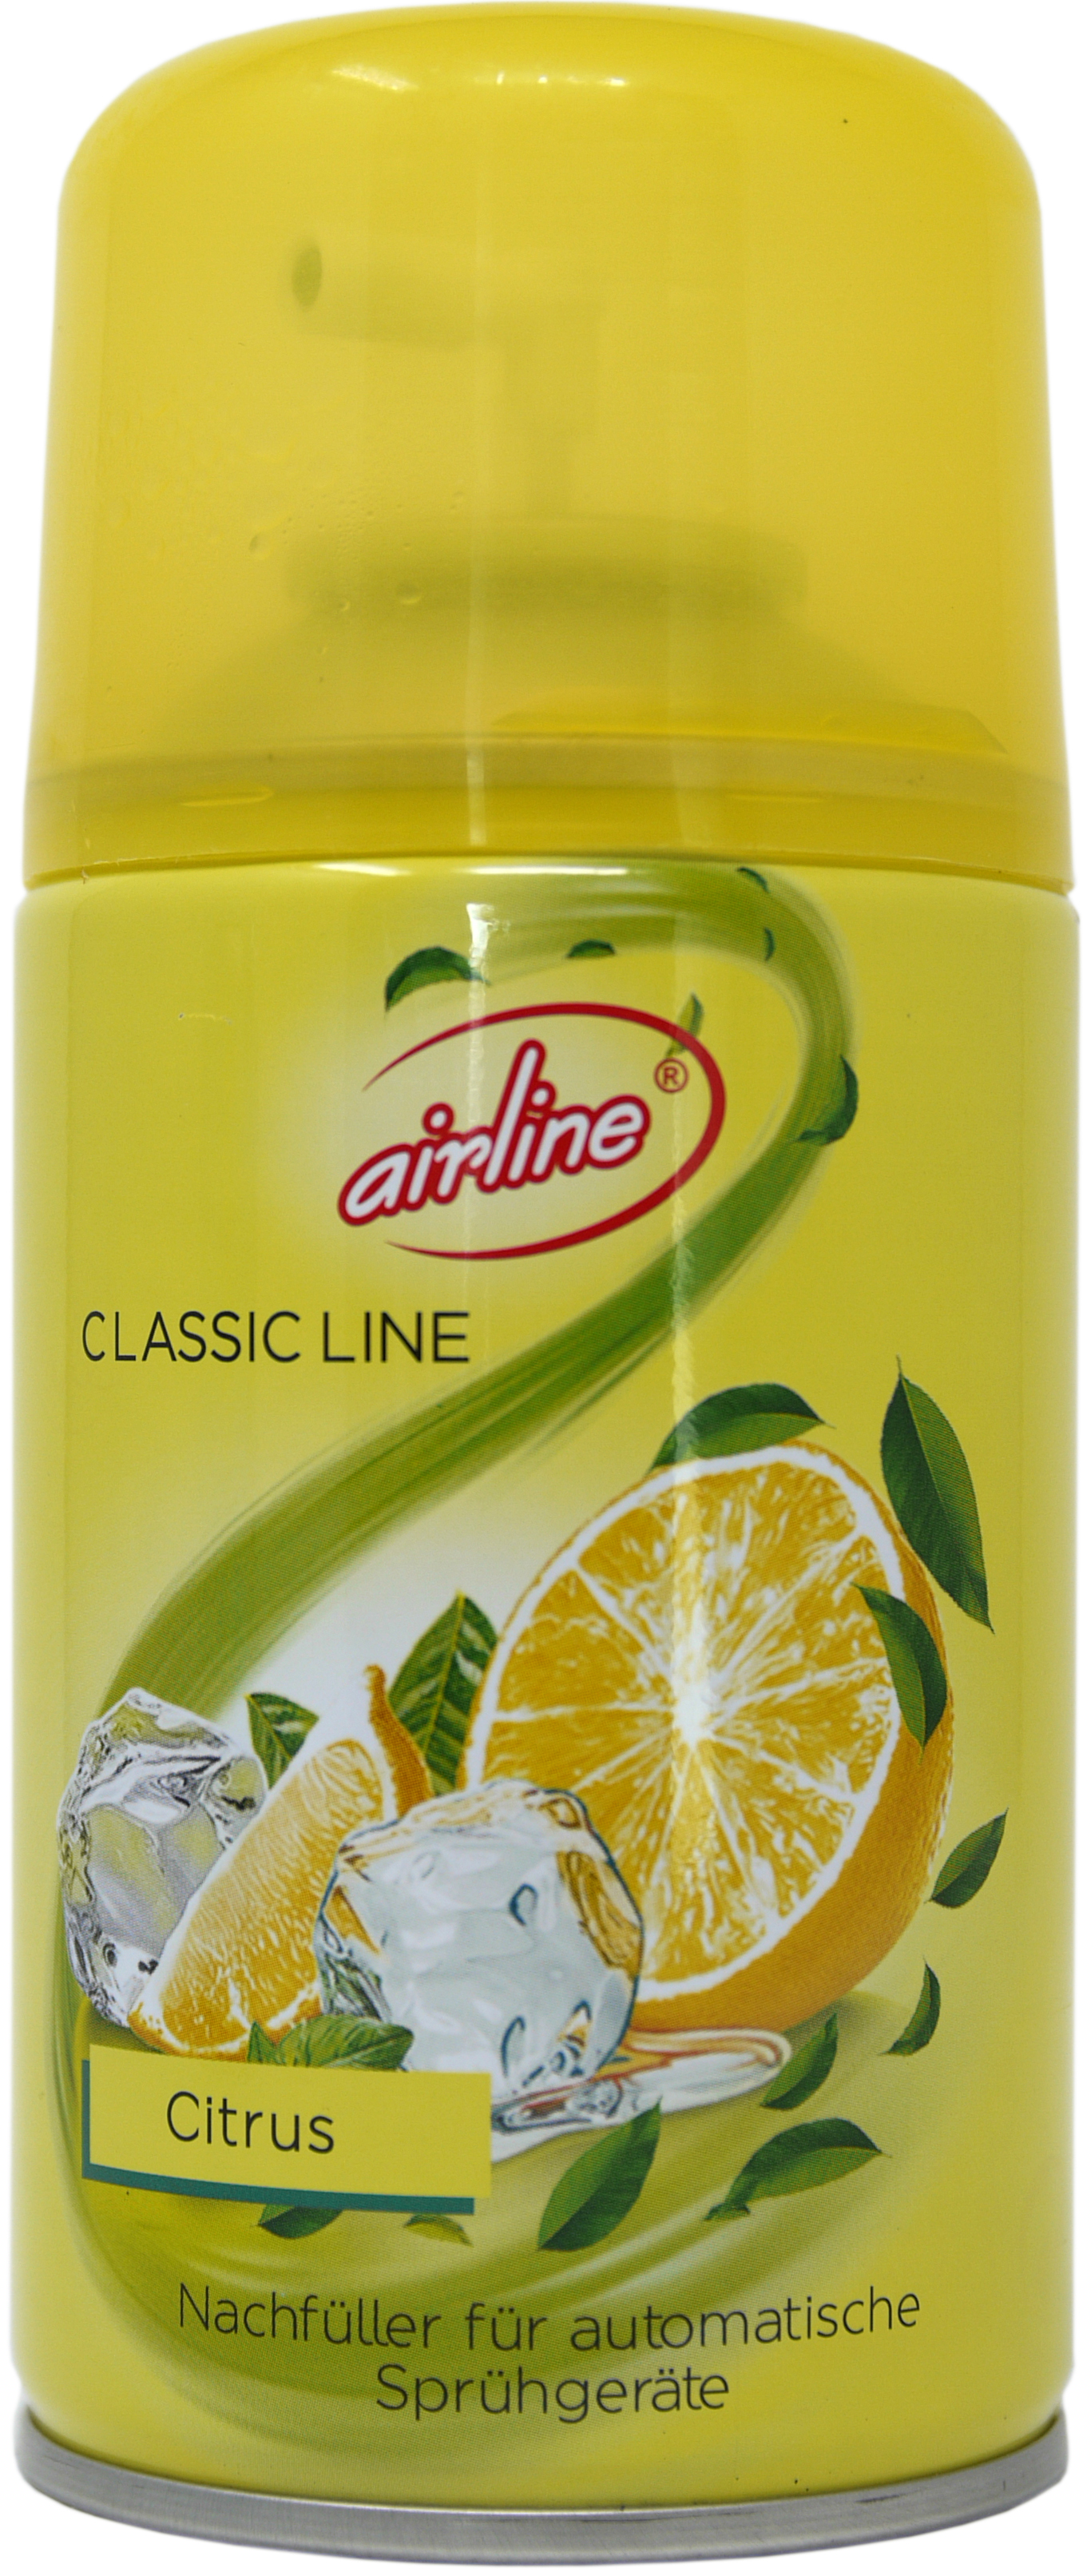 00505 - Classic Line citrus refill 250 ml